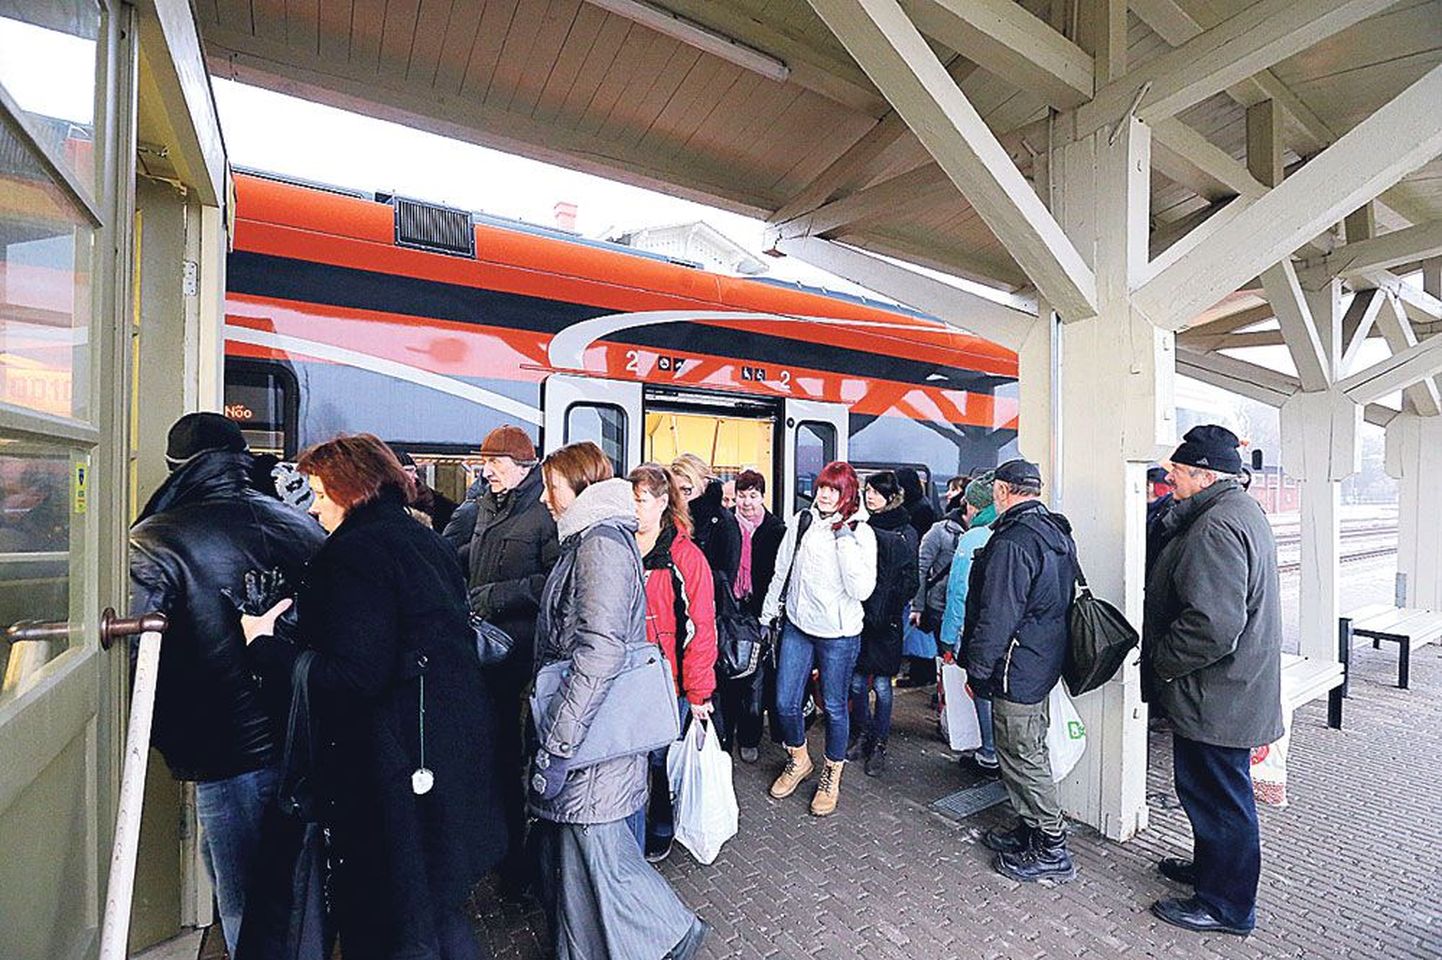 Eile hommikul kell 10.14 Tartu vaksalis Tallinna rongi pealt maha astunud reisijad kinnitasid, et oli küll pisut kitsas, kuid istekohti jätkus sellel reisil kõigile.